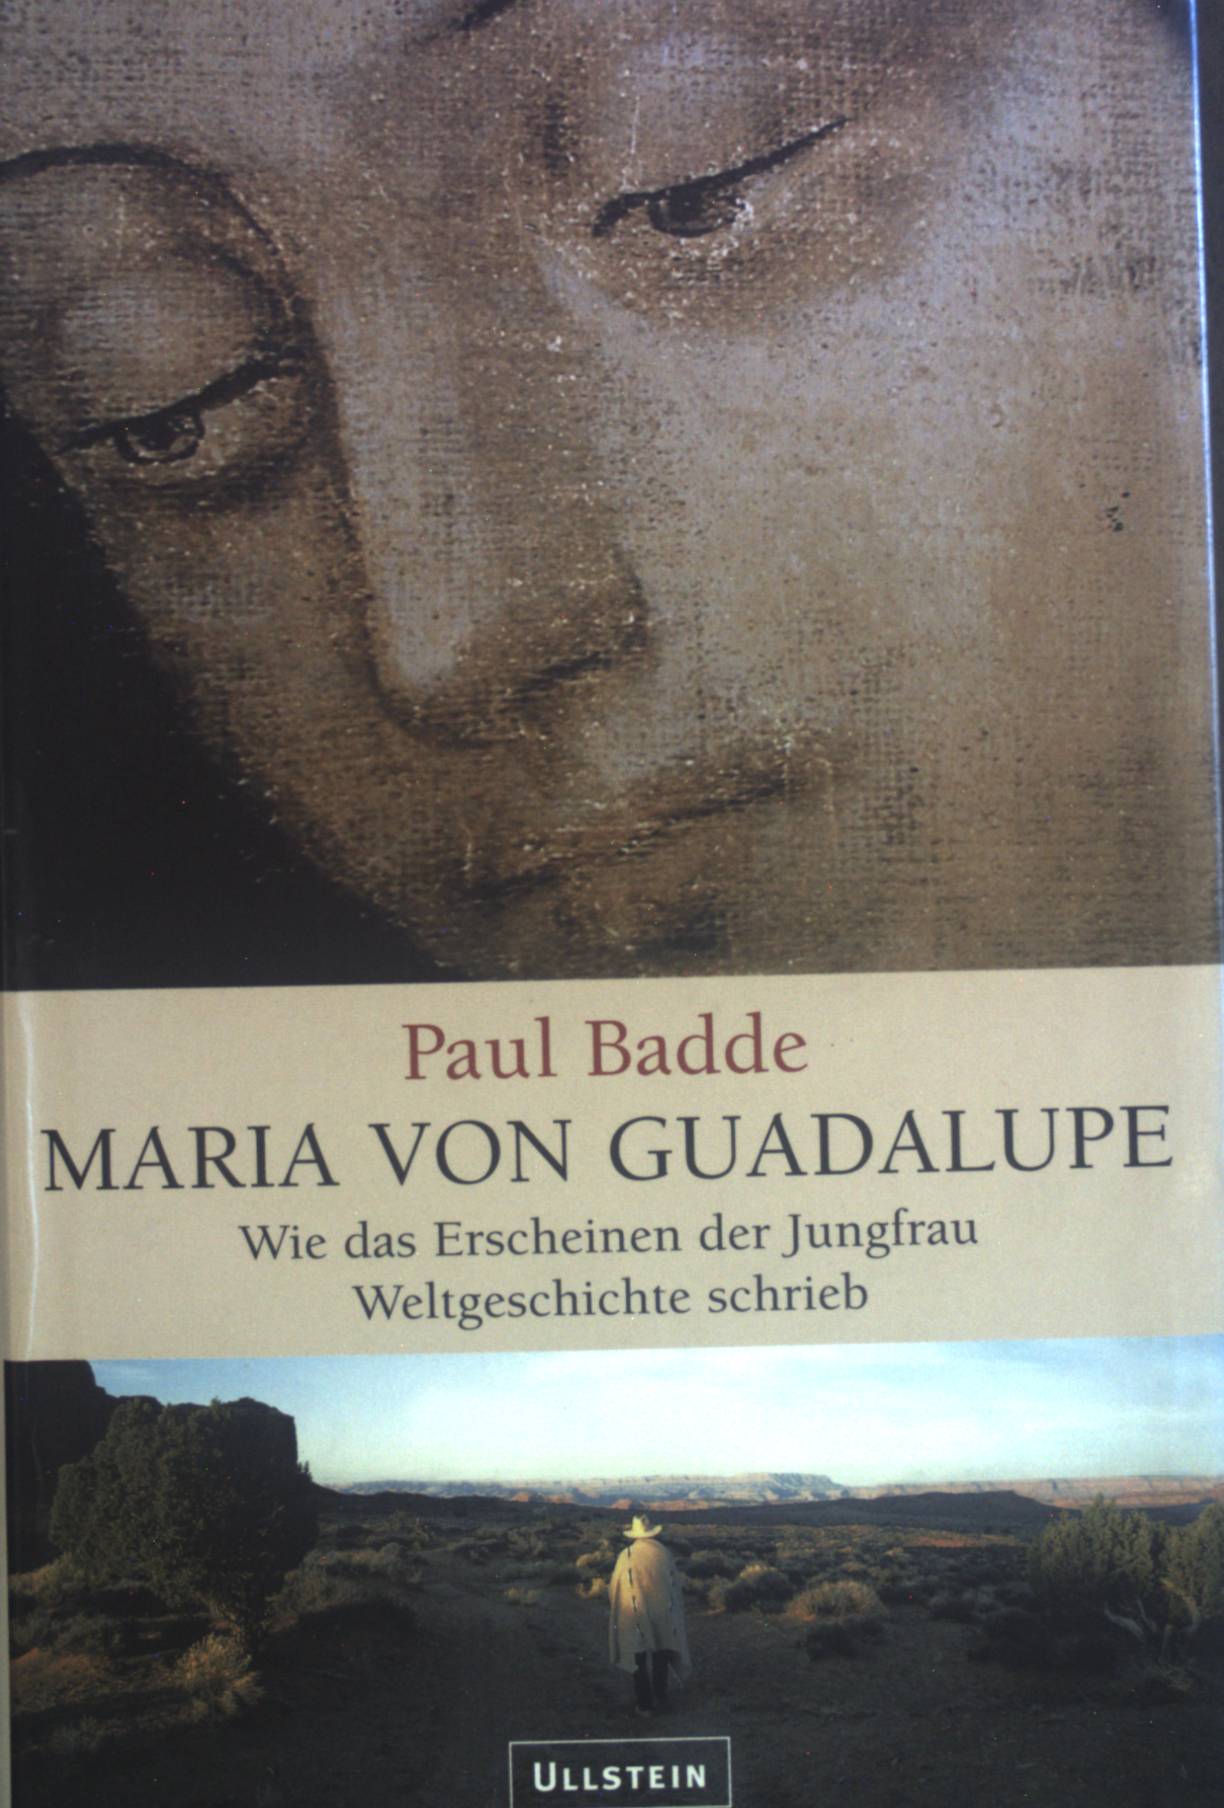 Maria von Guadalupe : wie das Erscheinen der Jungfrau Weltgeschichte schrieb. - Badde, Paul